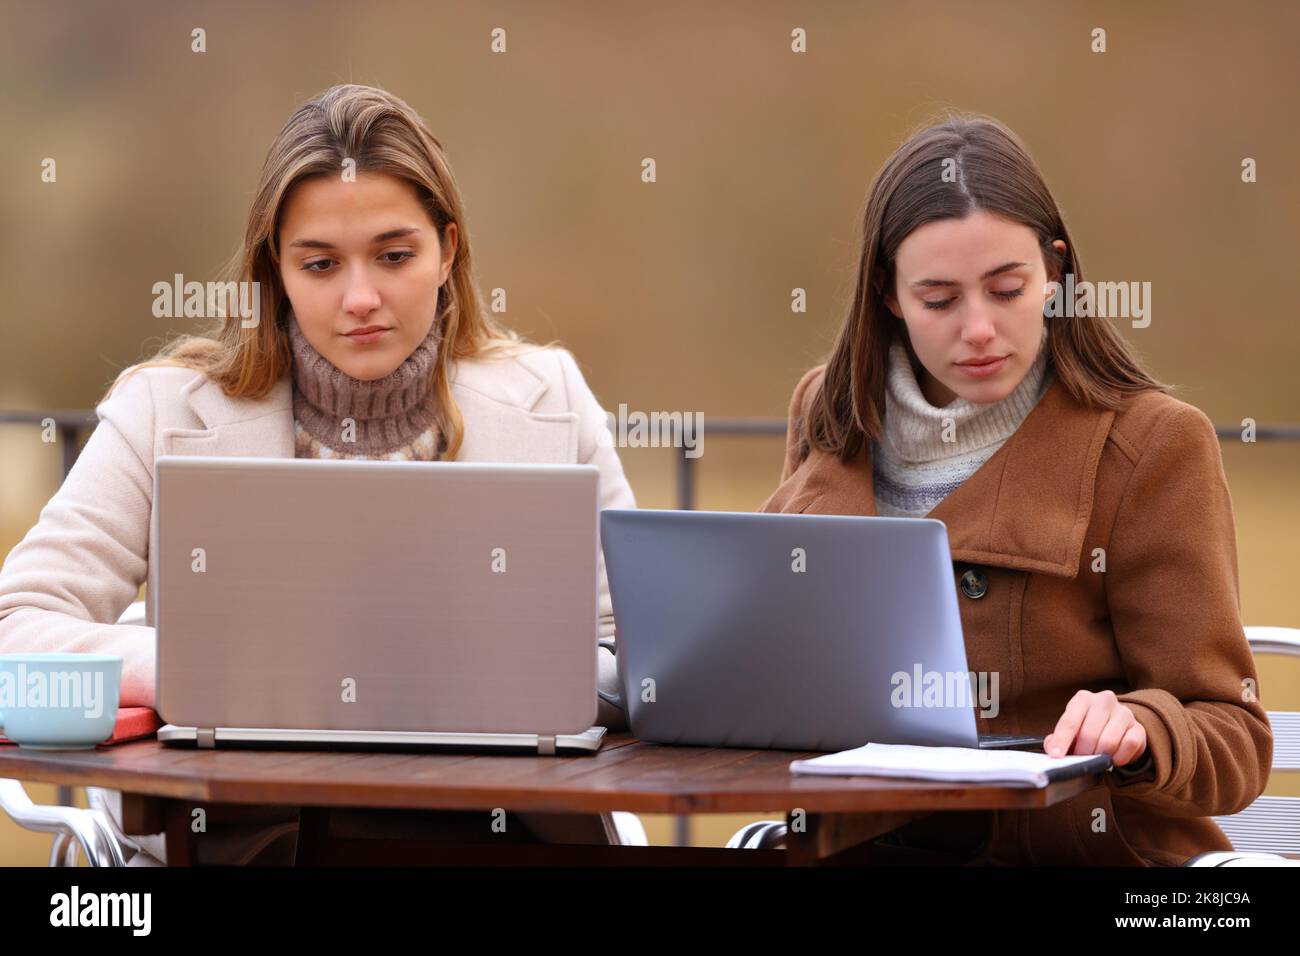 Vorderansicht von zwei Studenten, die im Winter mit Laptops studieren Stockfoto